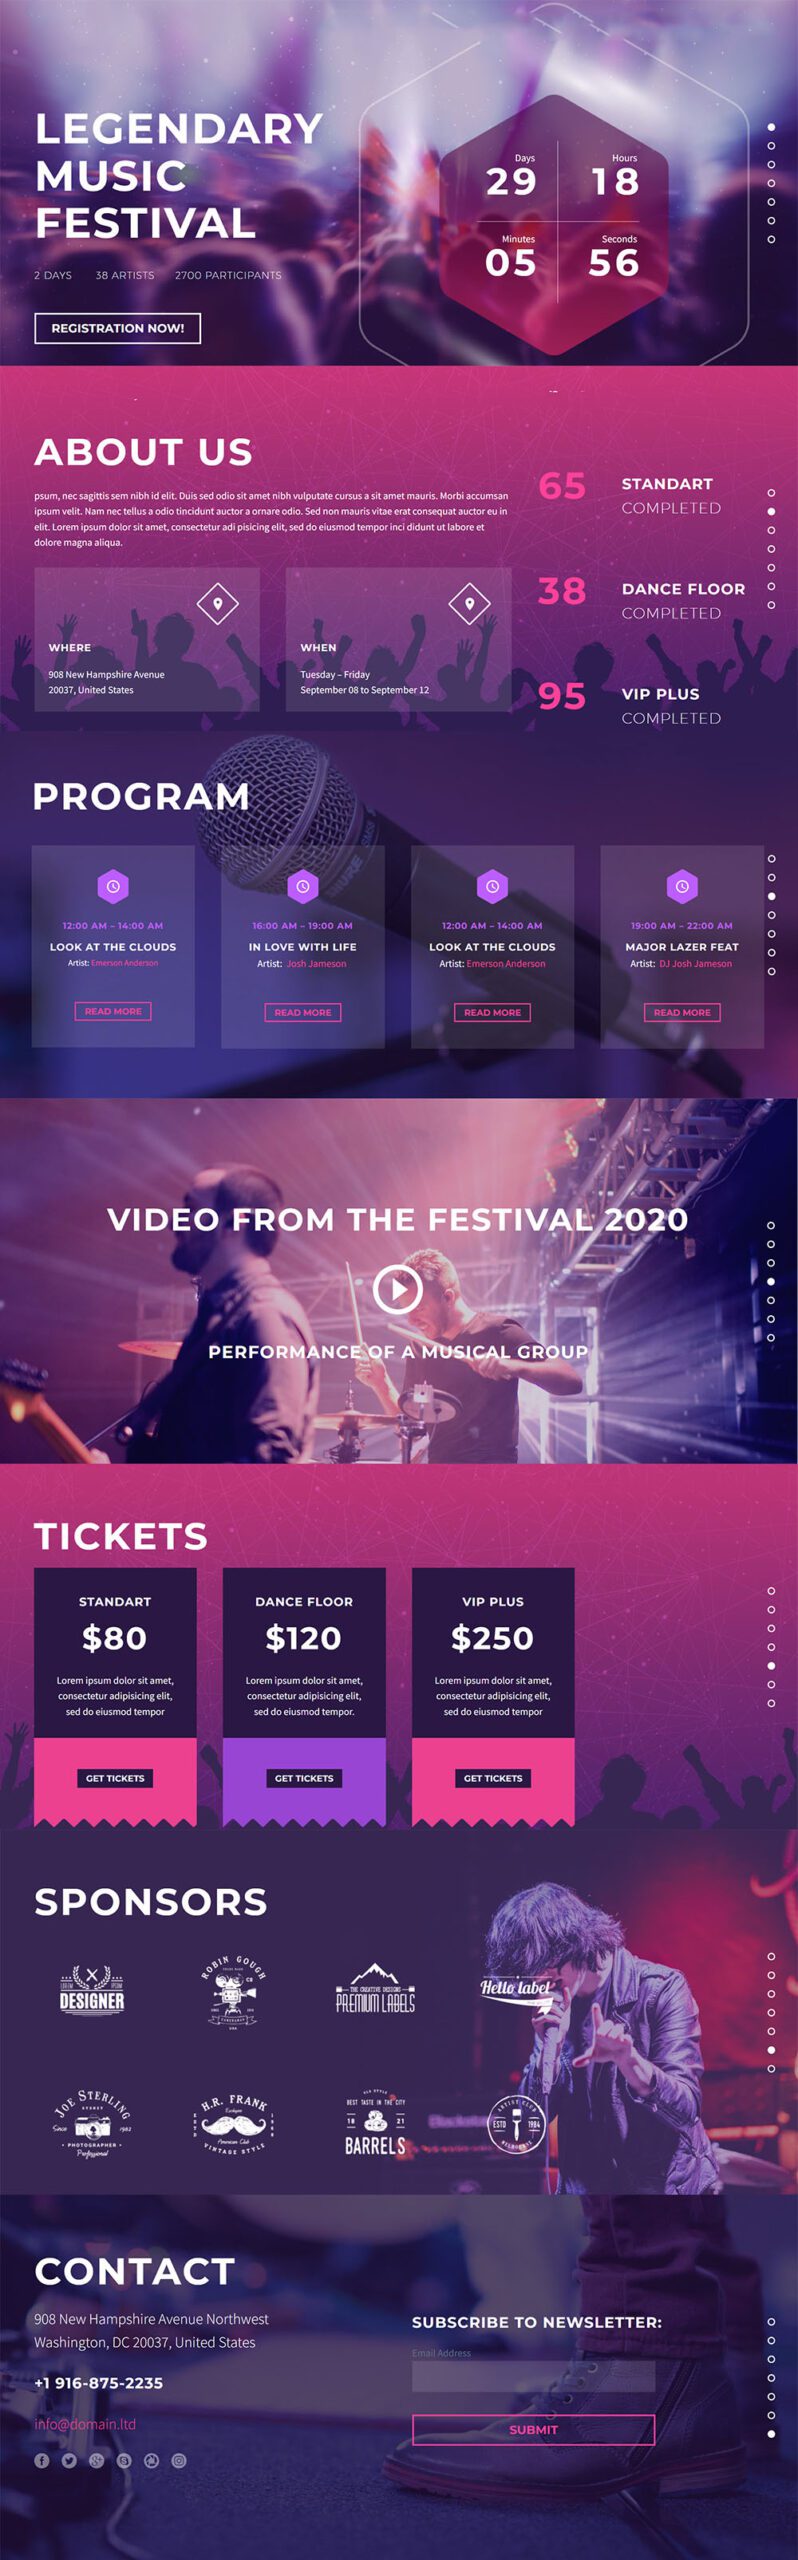 Music Festival Website Design